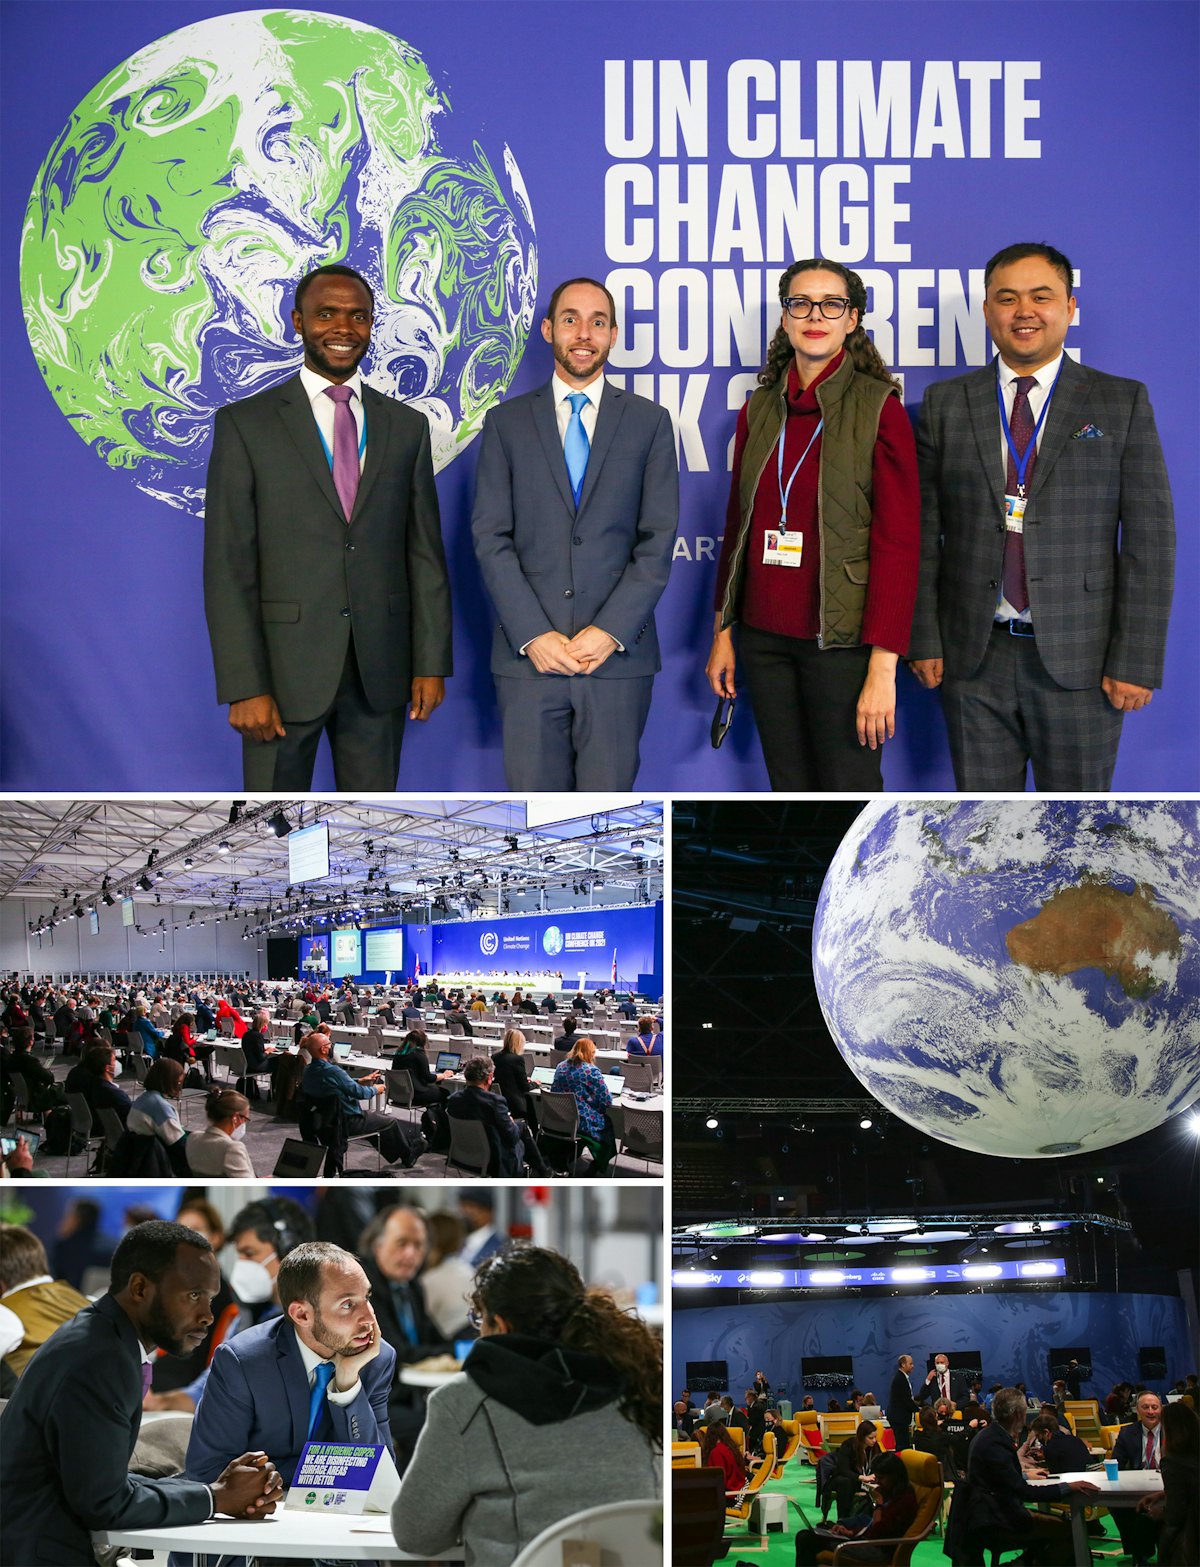 Los representantes de la Comunidad Internacional Bahá’í participaron en los debates de la cumbre sobre el clima COP26 y analizaron las dimensiones morales de las medidas sobre el clima.